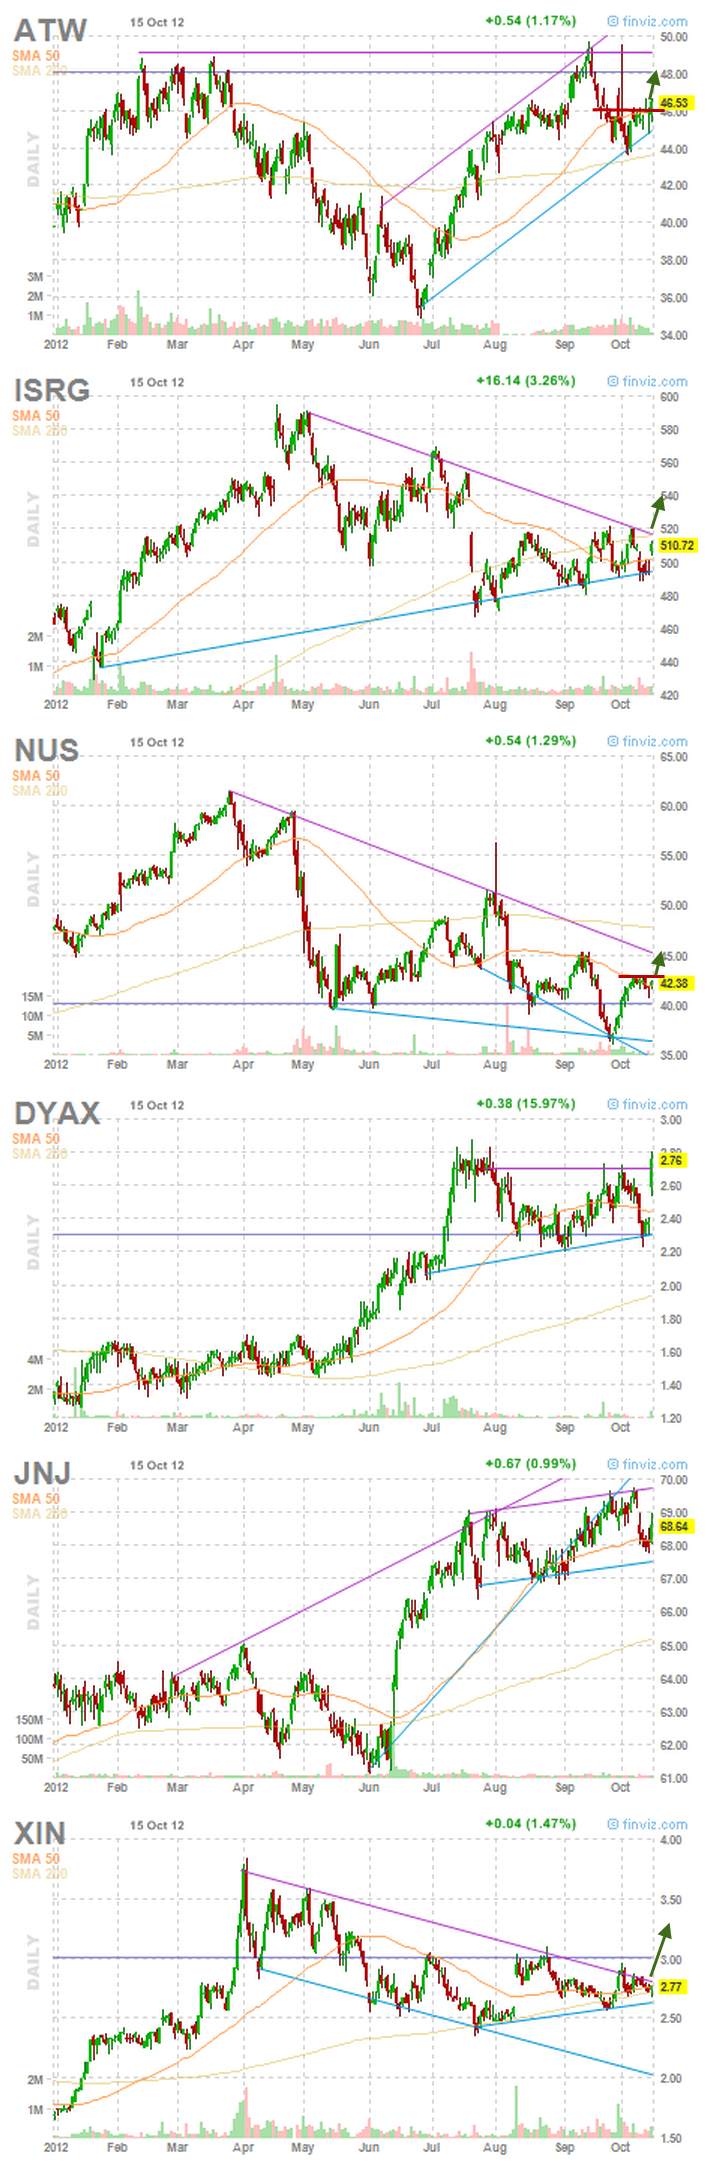 6-stocks gaining momentum